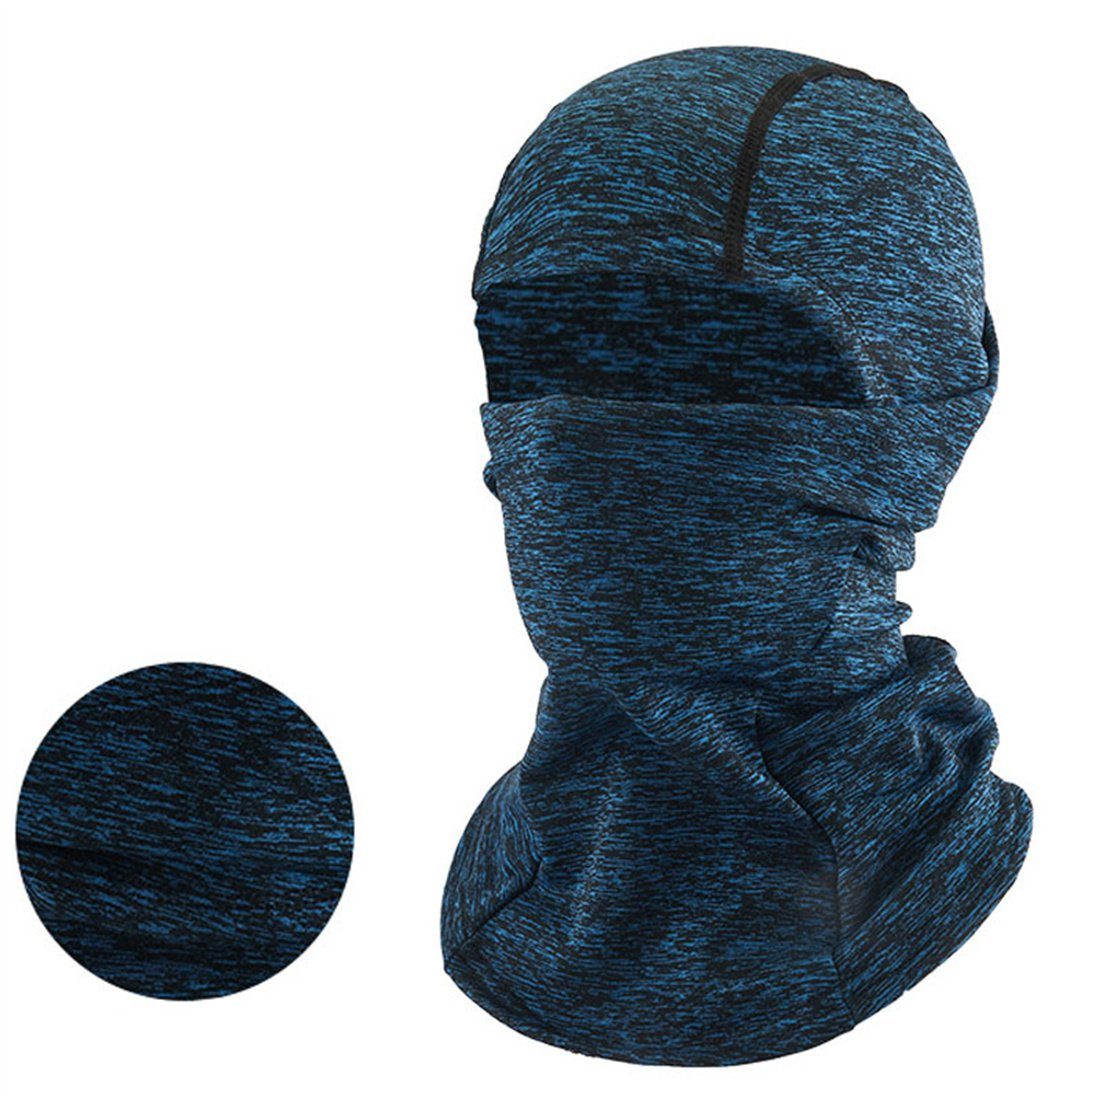 Maske, unisex Winter warme kalte blau Ski Sturmhaube DÖRÖY Radfahren Kopfbedeckung,